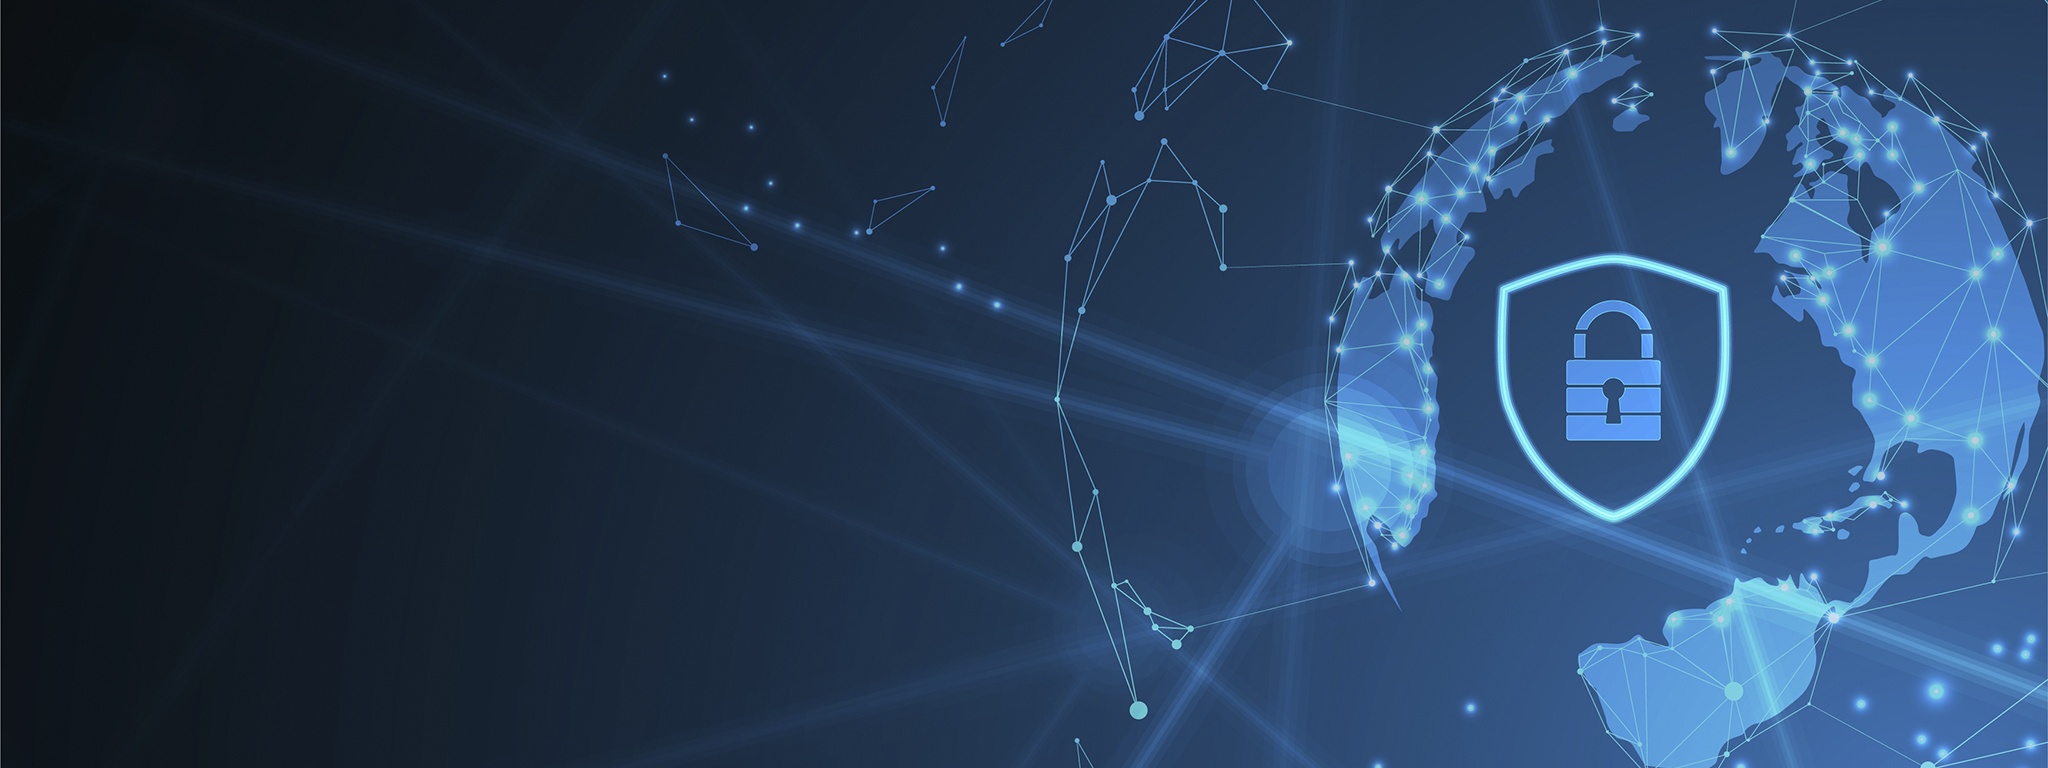 immagine di colore blu che raffigura delle linee Internet digitali su una sfera con un lucchetto e uno scudo